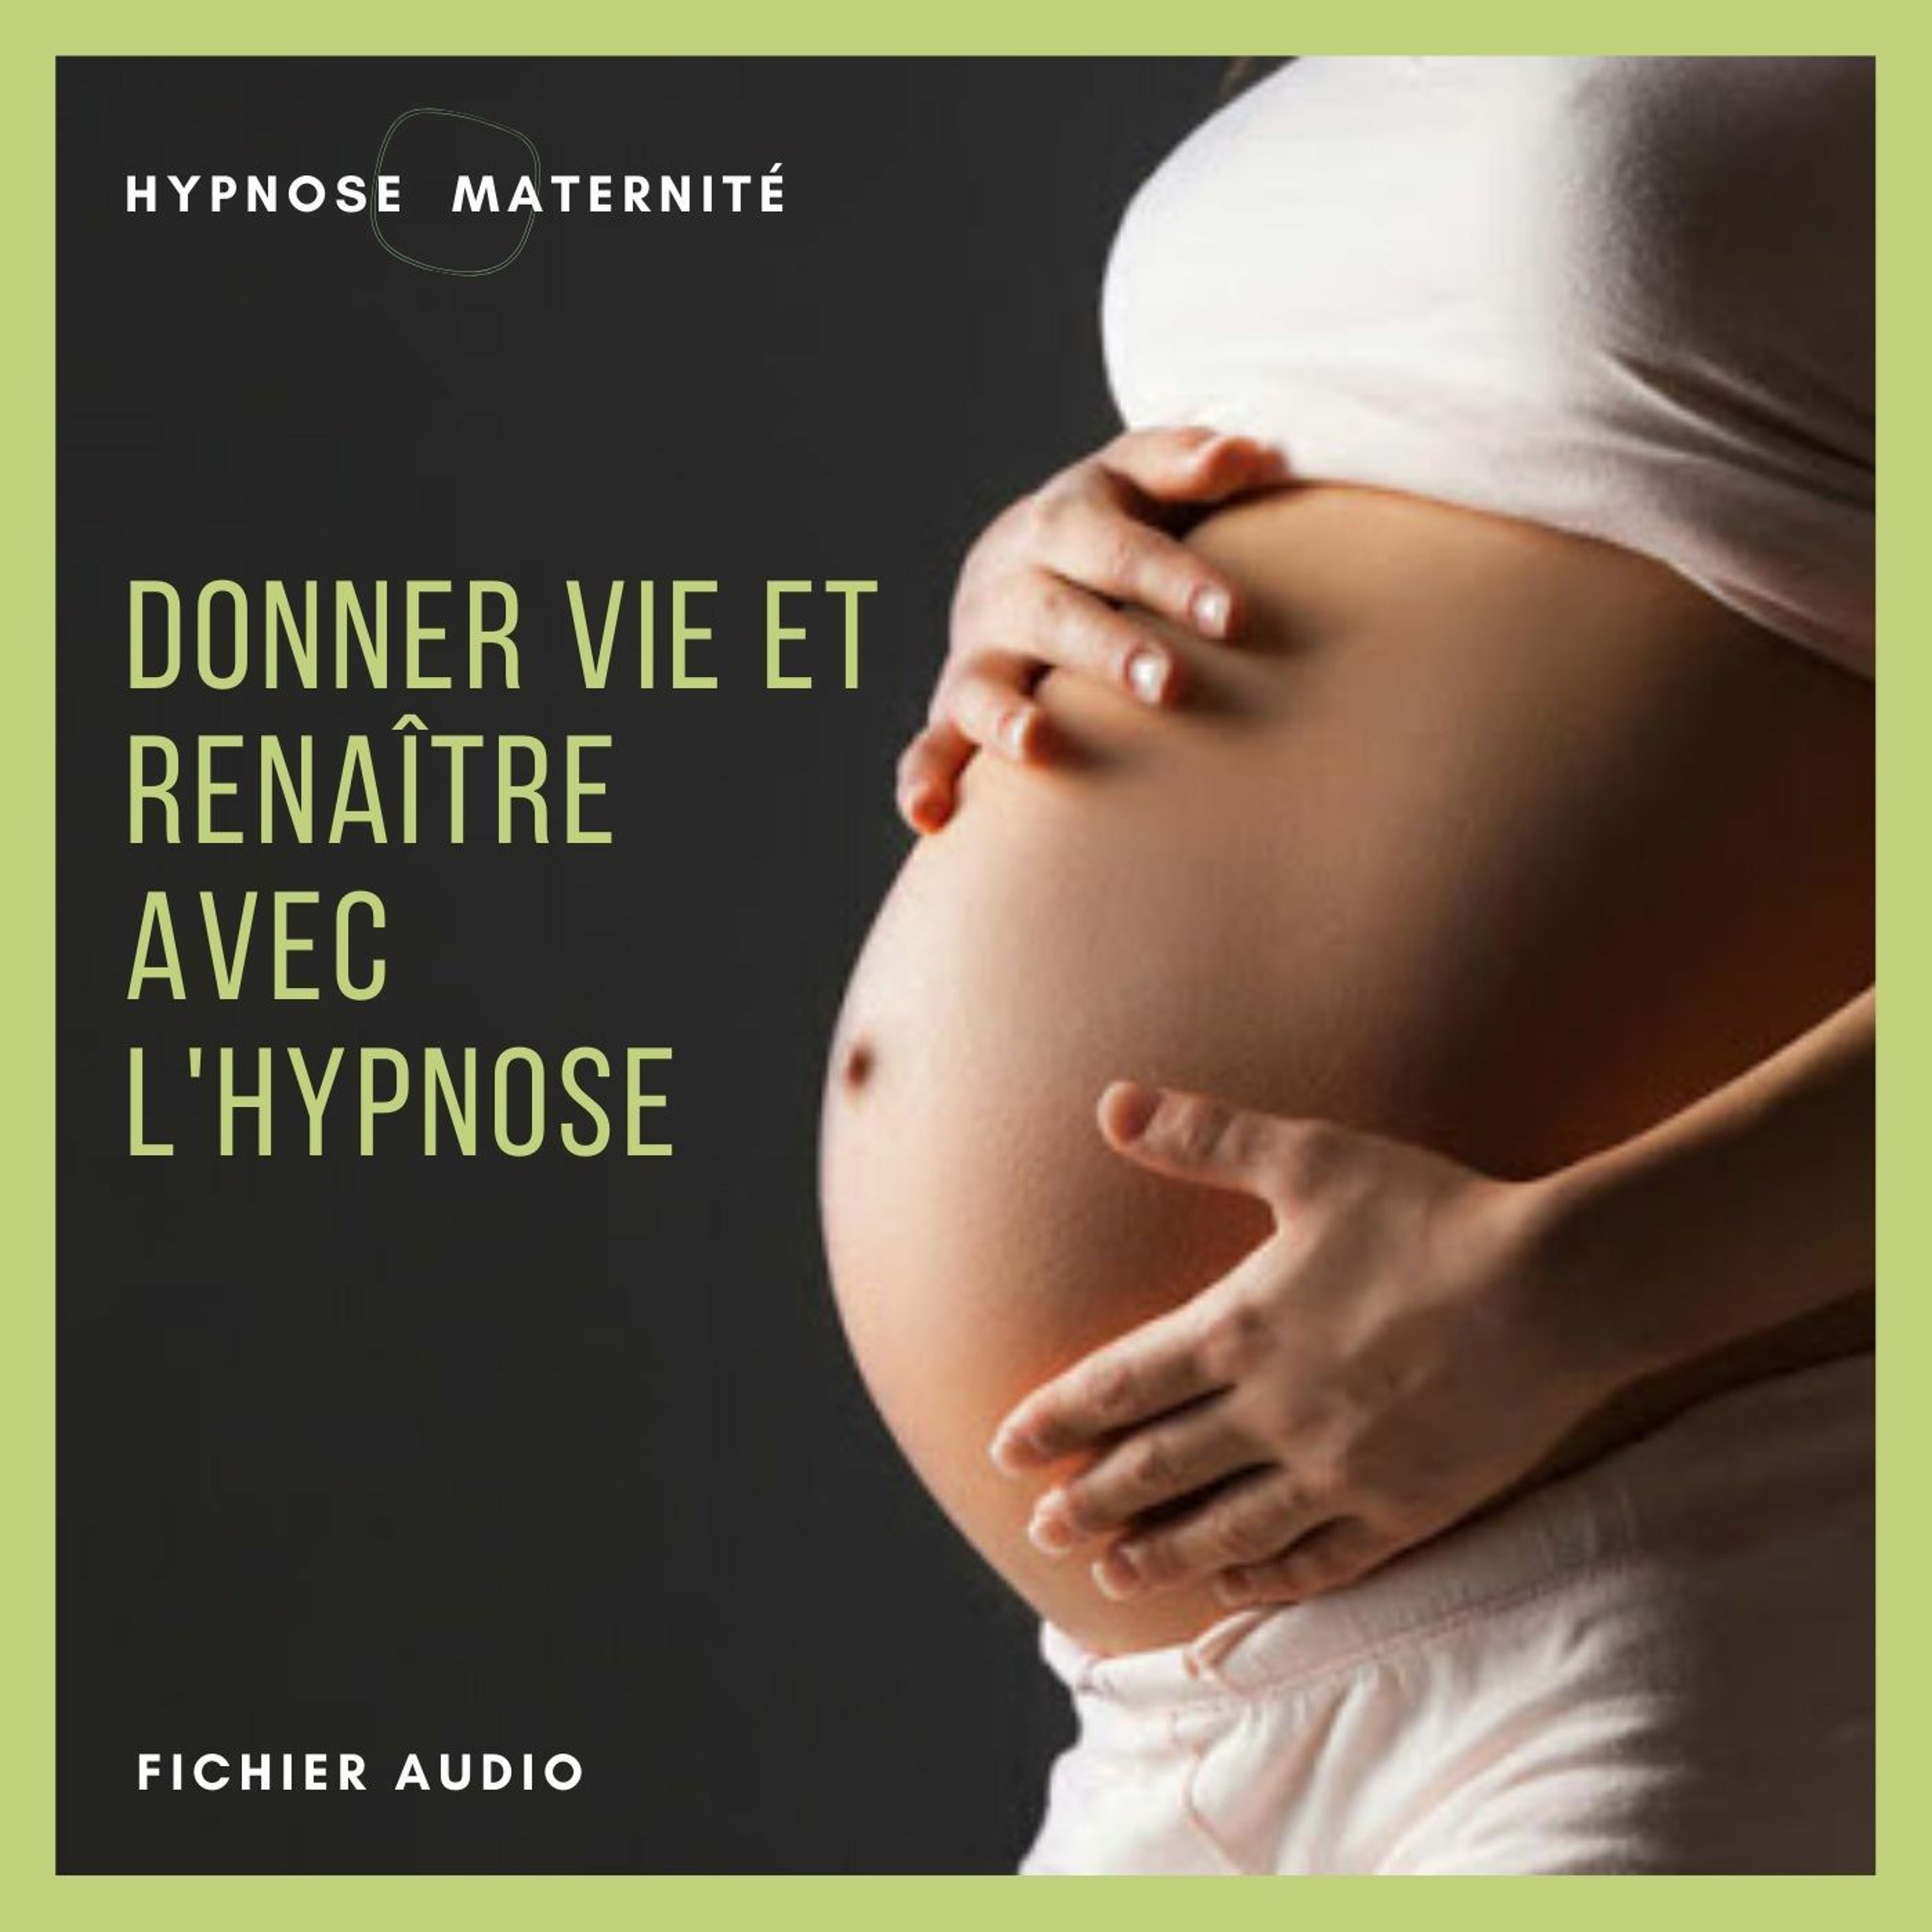 Femmes enceintes : Préparer son accouchement avec l’hypnose pour une naissance merveilleuse.